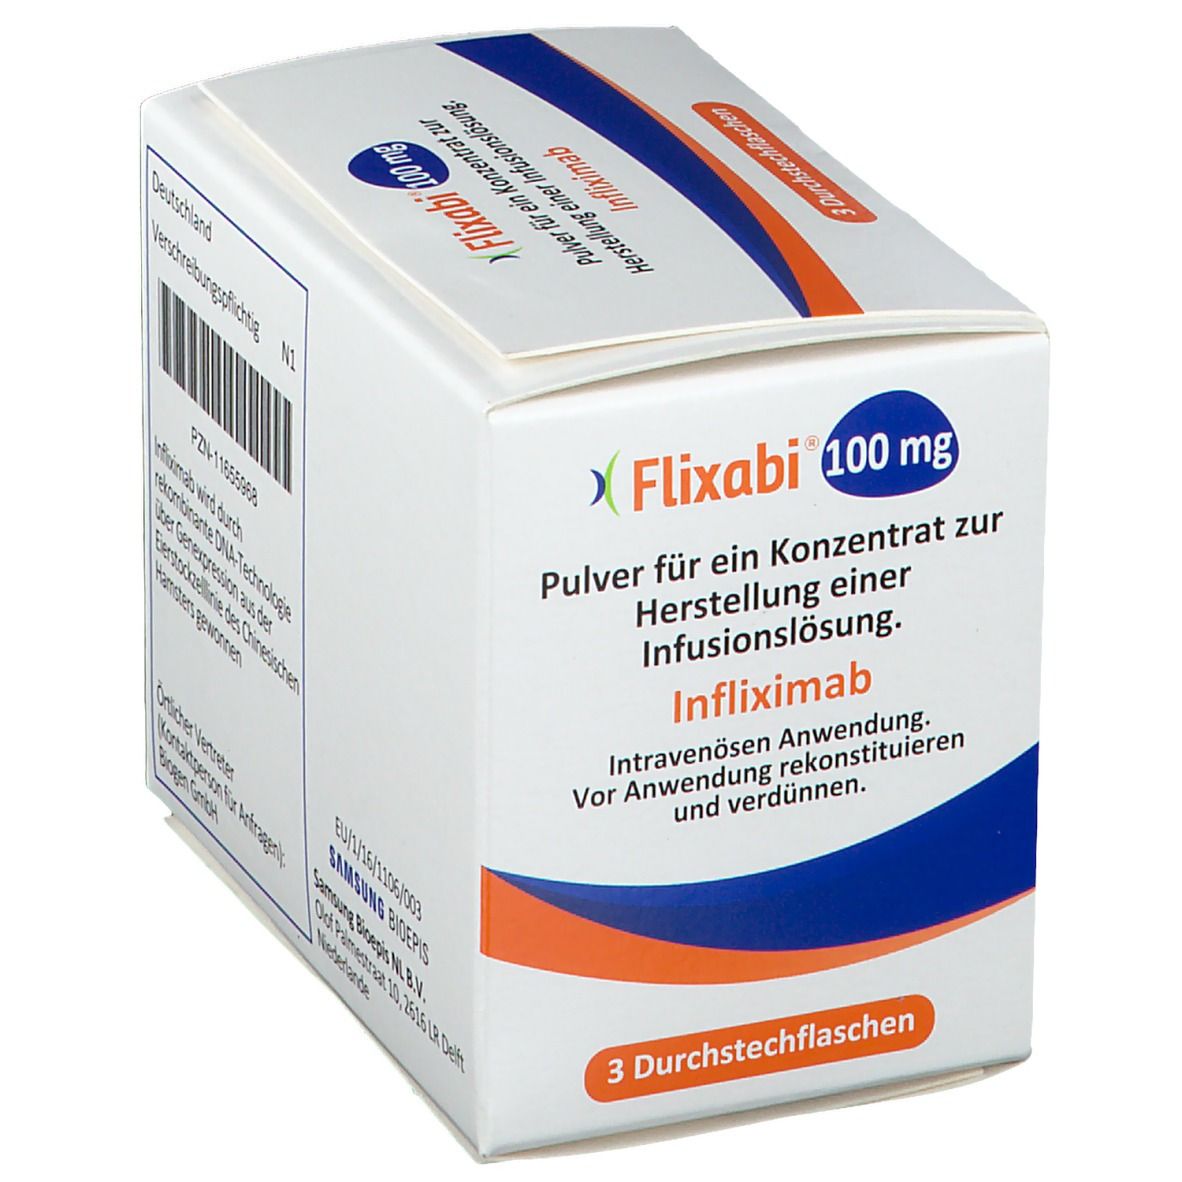 Flixabi® 100 mg